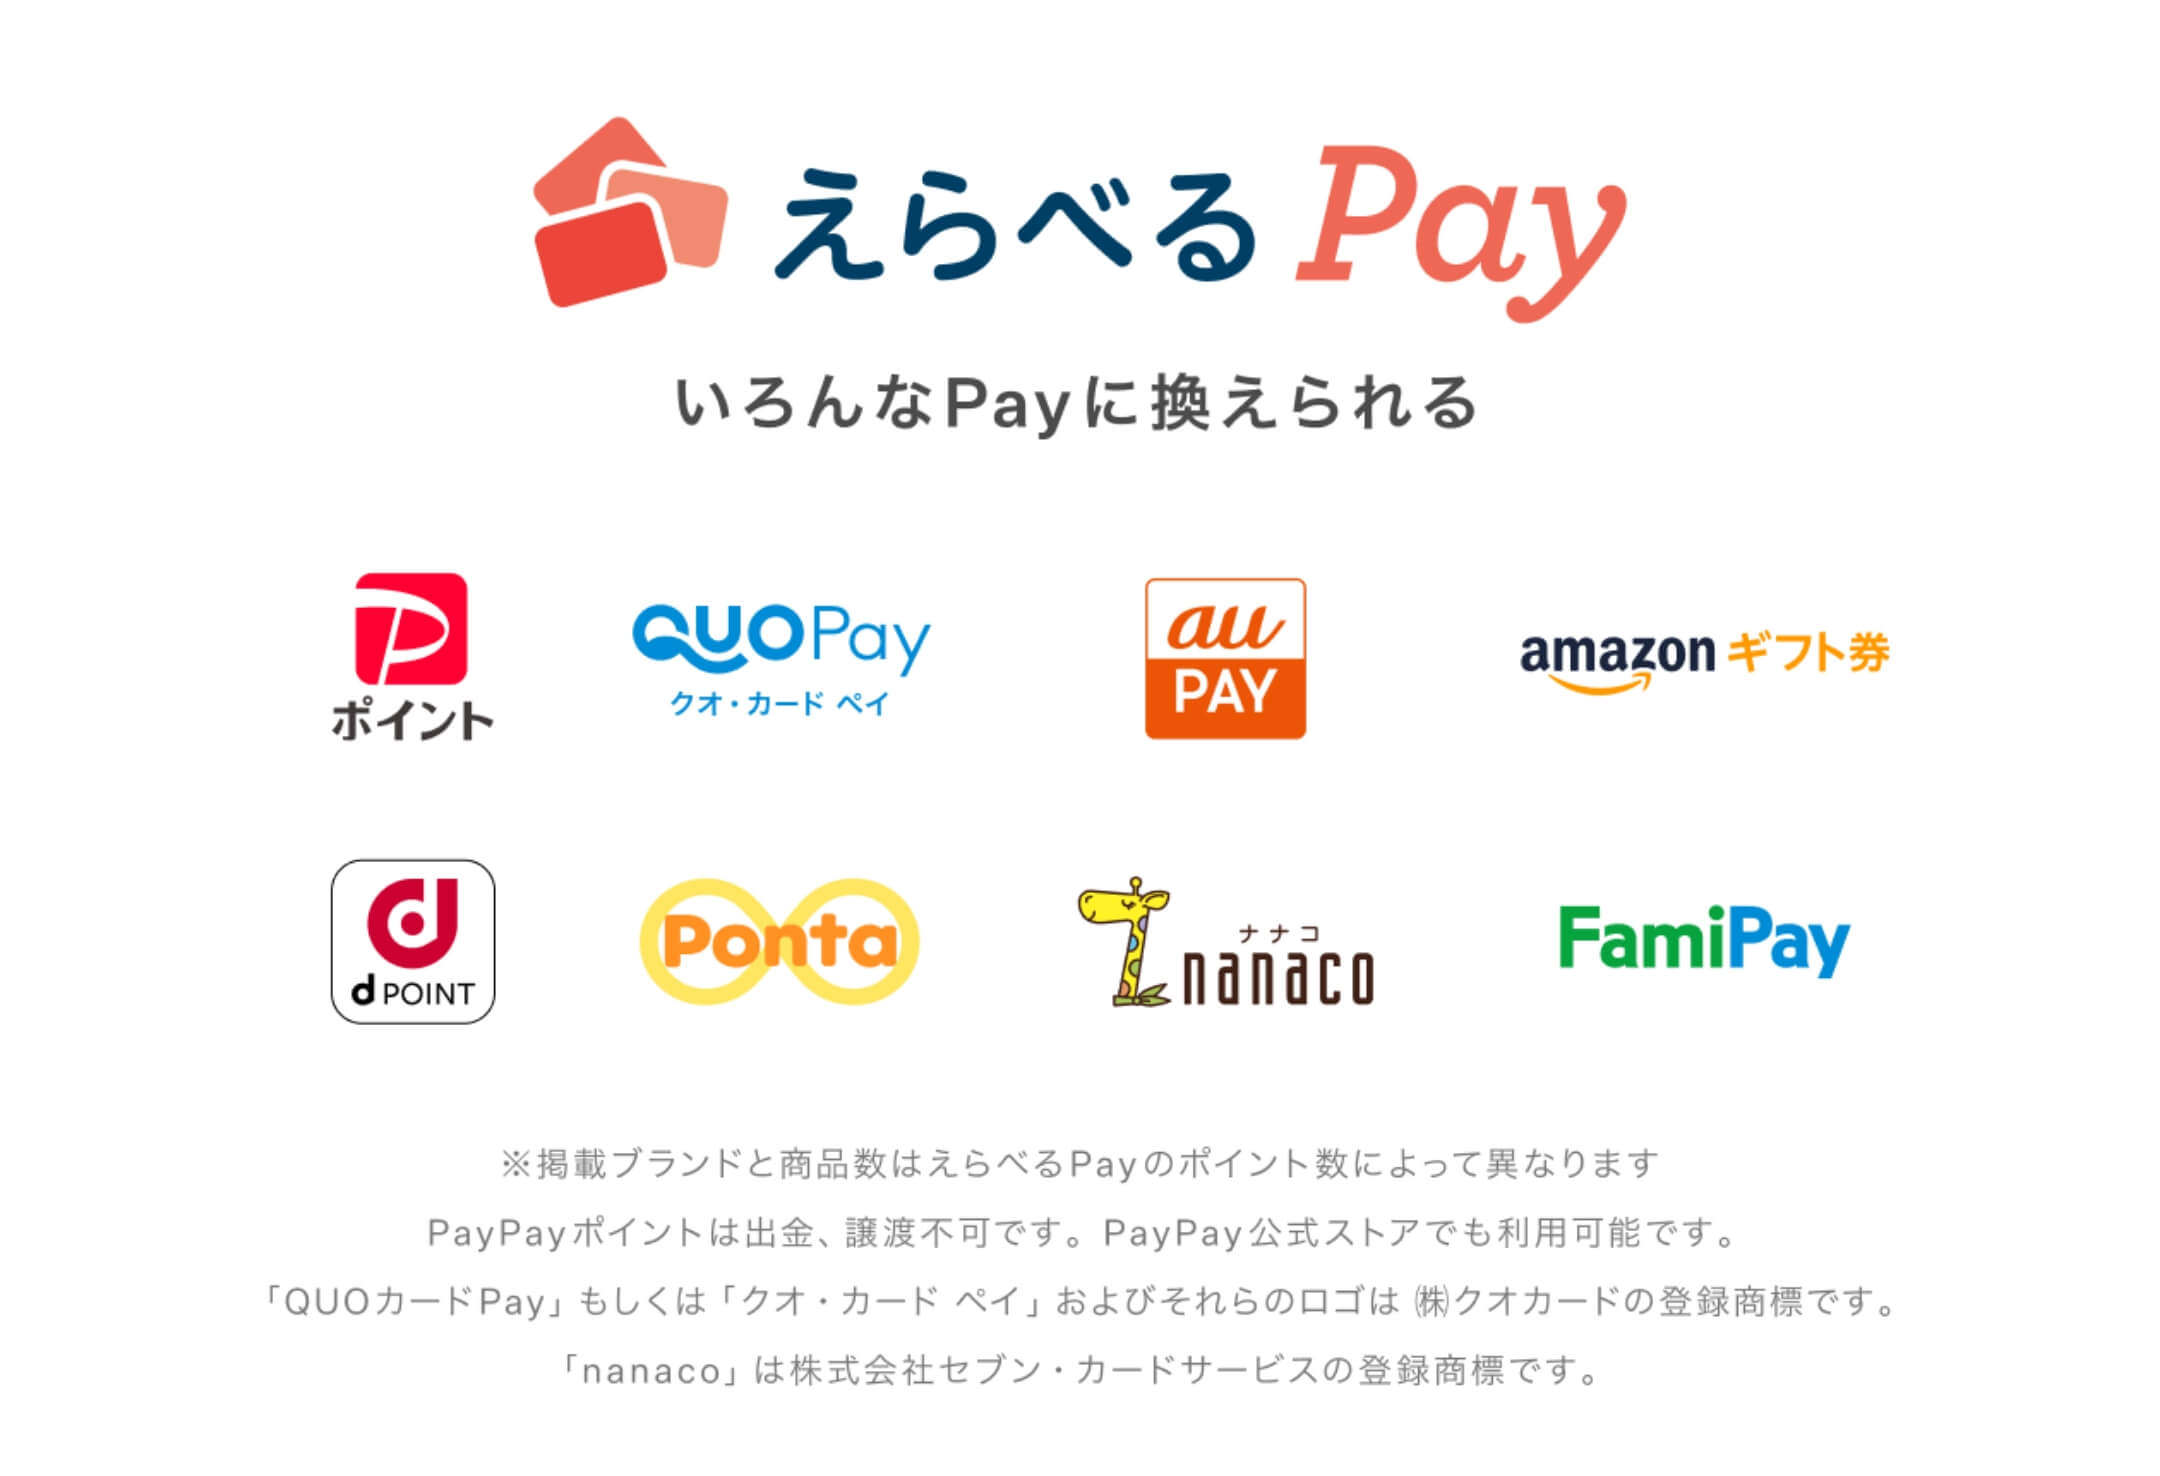 えらべるPay いろんなPayに換えられる PayPay、クオ・カード ペイ、AU PAY、amazonギフト券、d POINT、Ponta、nanaco、FamiPay ※掲載ブランドと商品数はえらべるPayのポイント数によって異なります PayPayポイントは出金、譲渡不可です。PayPay公式ストアでも利用可能です。「QUOカードPay」もしくは「クオ・カード ペイ」およびそれらのロゴは㈱クオカードの登録商標です。「nanaco」は株式会社セブン・カードサービスの登録商標です。